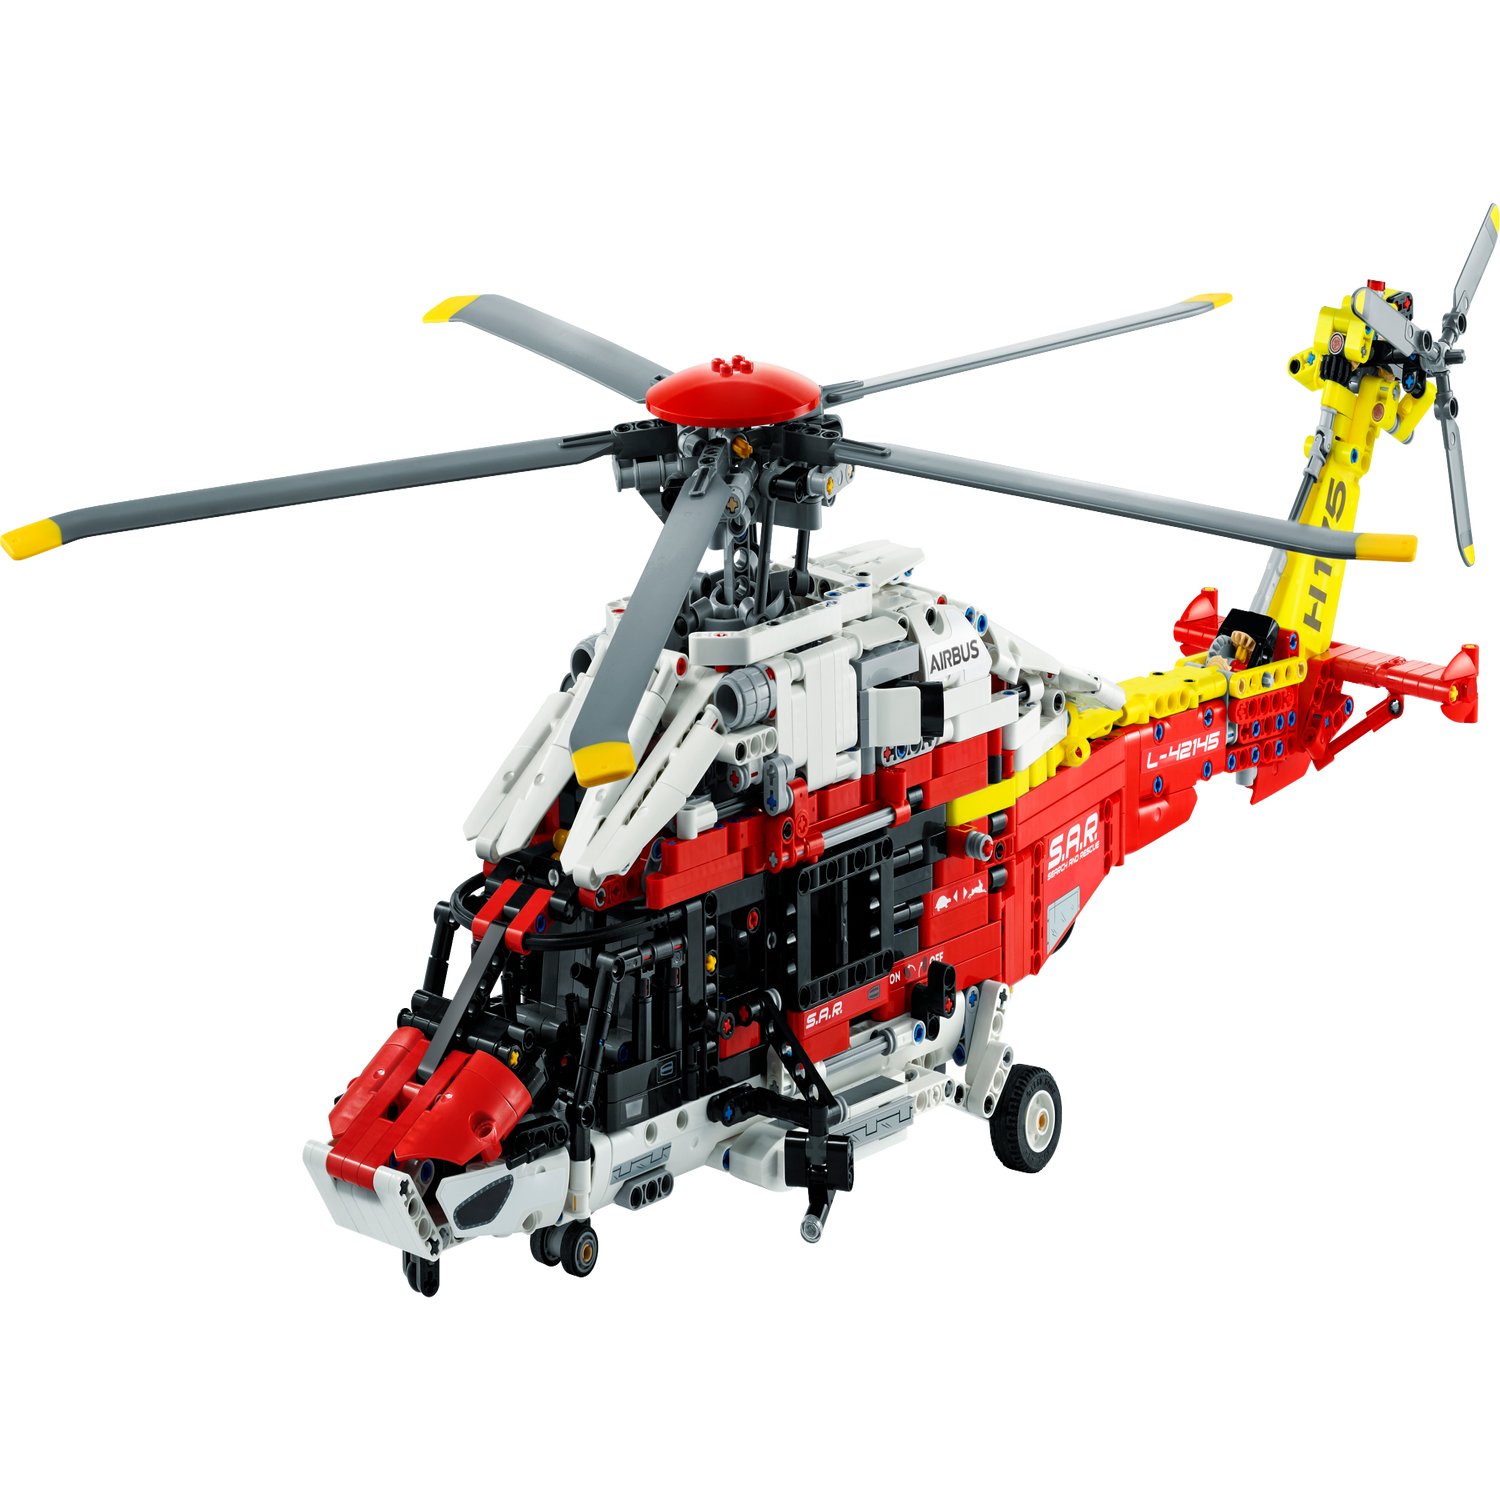 LEGO Technic 42145 L’Hélicoptère de Secours Airbus H175